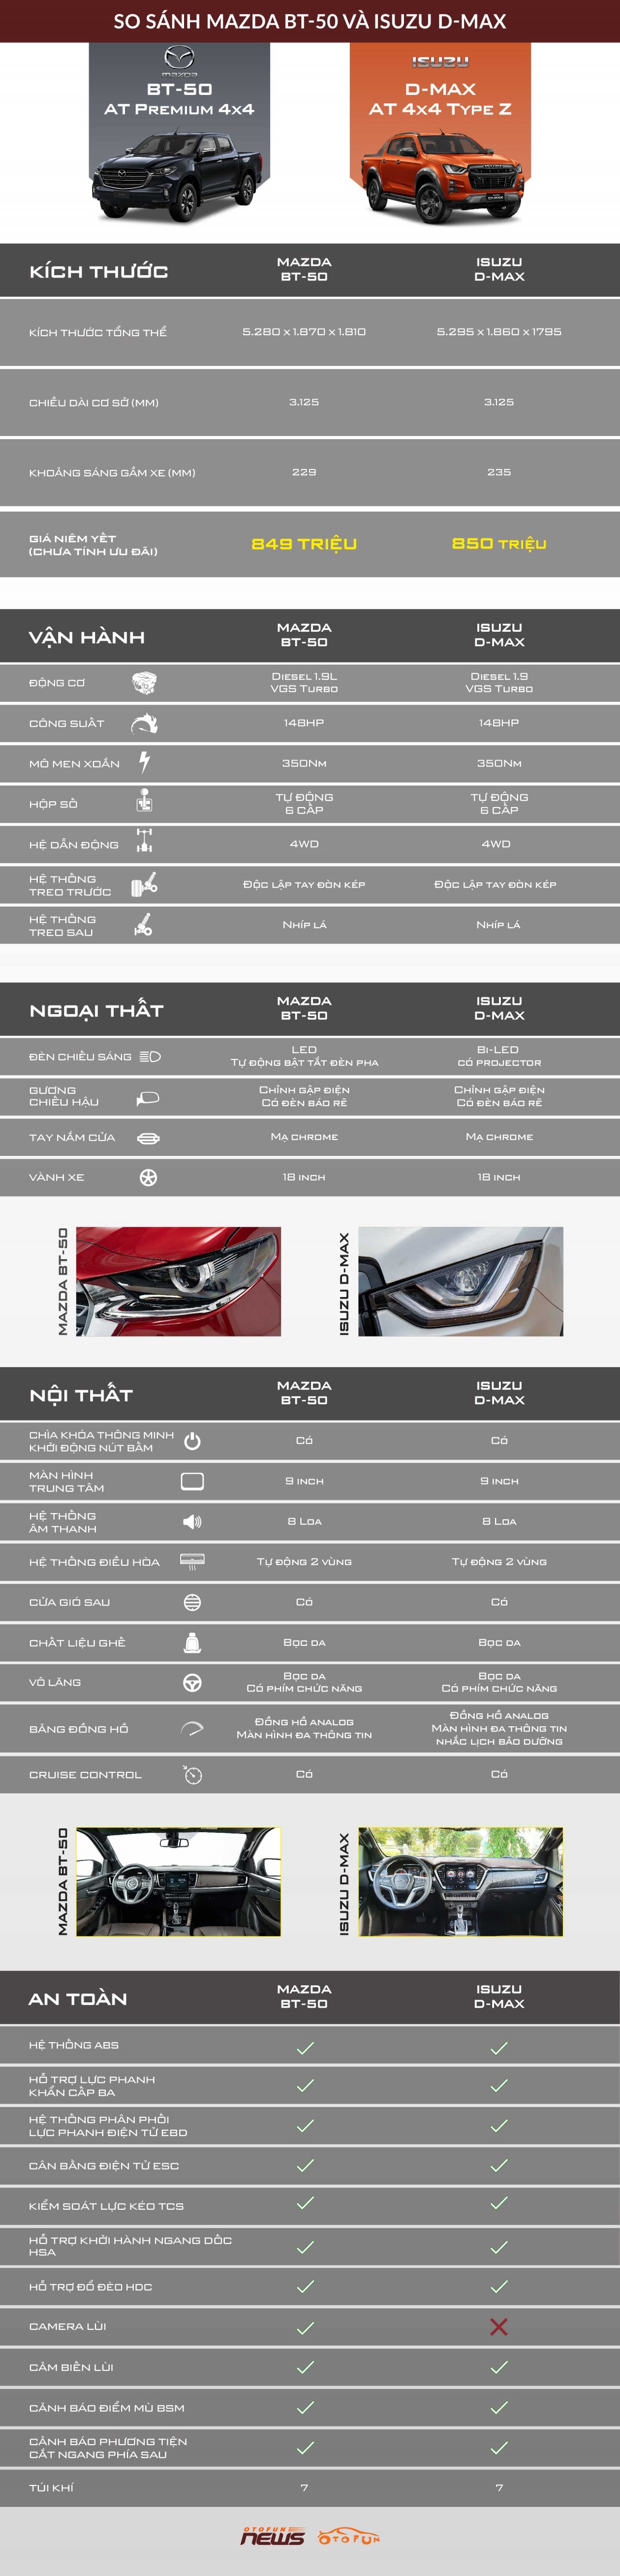 [Infographic] So sánh Mazda BT-50 và Isuzu D-Max phiên bản cao cấp nhất